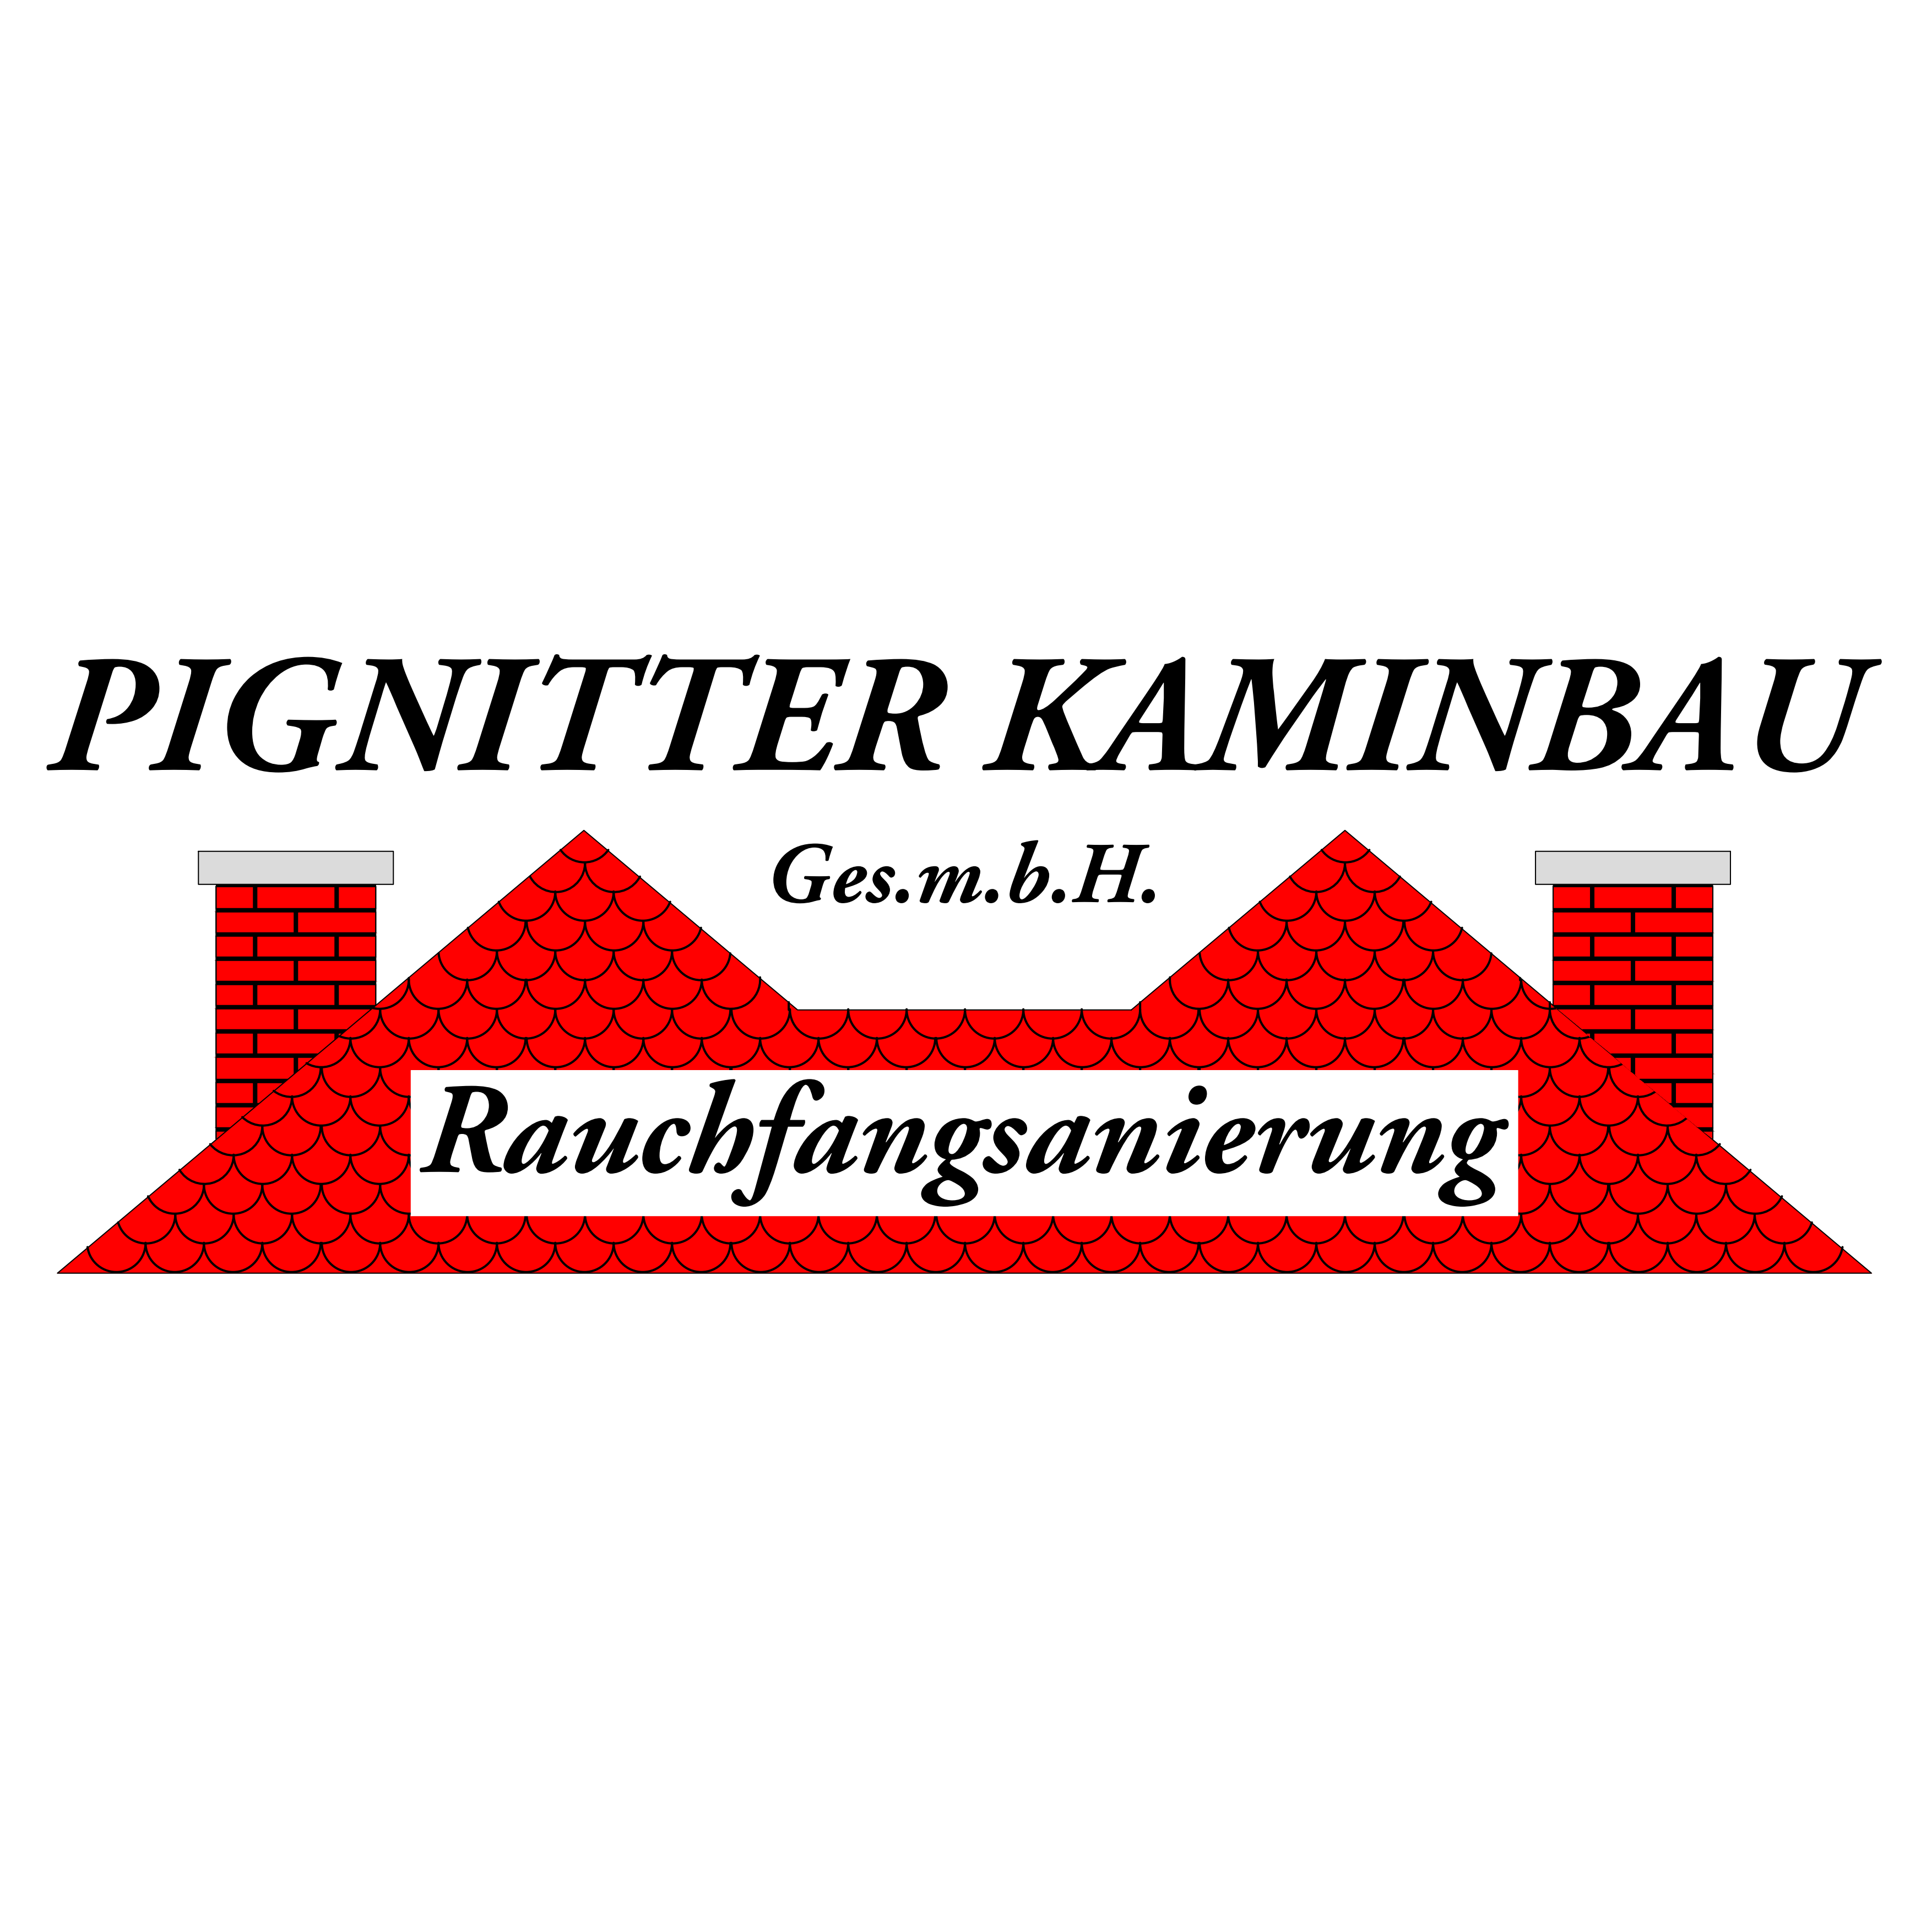 Pignitter Kaminbau Ges.m.b.H.